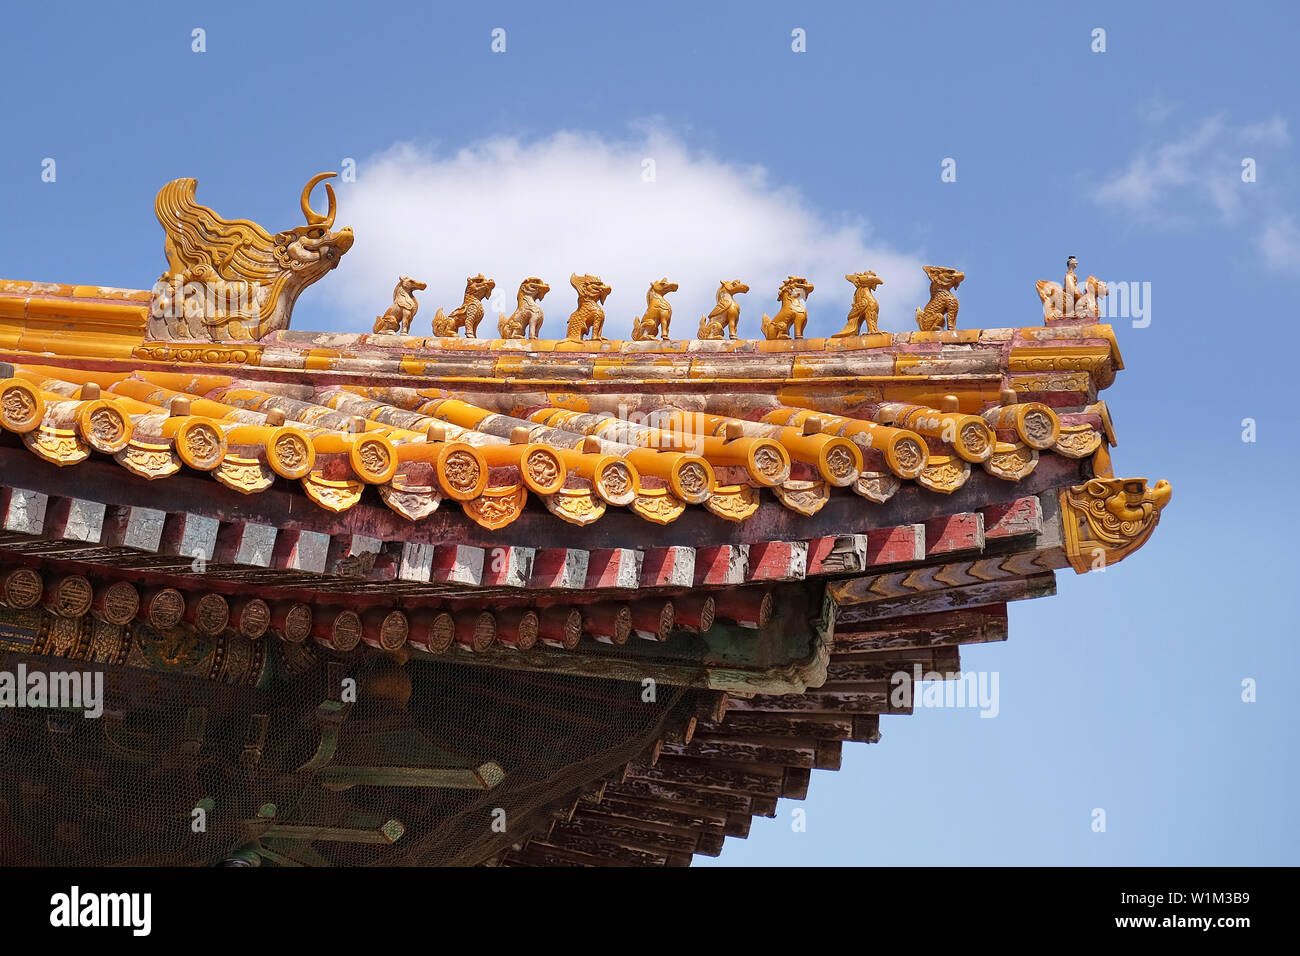 Details der Verzierungen Übersicht fantesy Wesen auf einem gelben Dach im Inneren des Palastes Museum, auch bekannt als die Verbotene Stadt in Peking, China, mit einem c Stockfoto